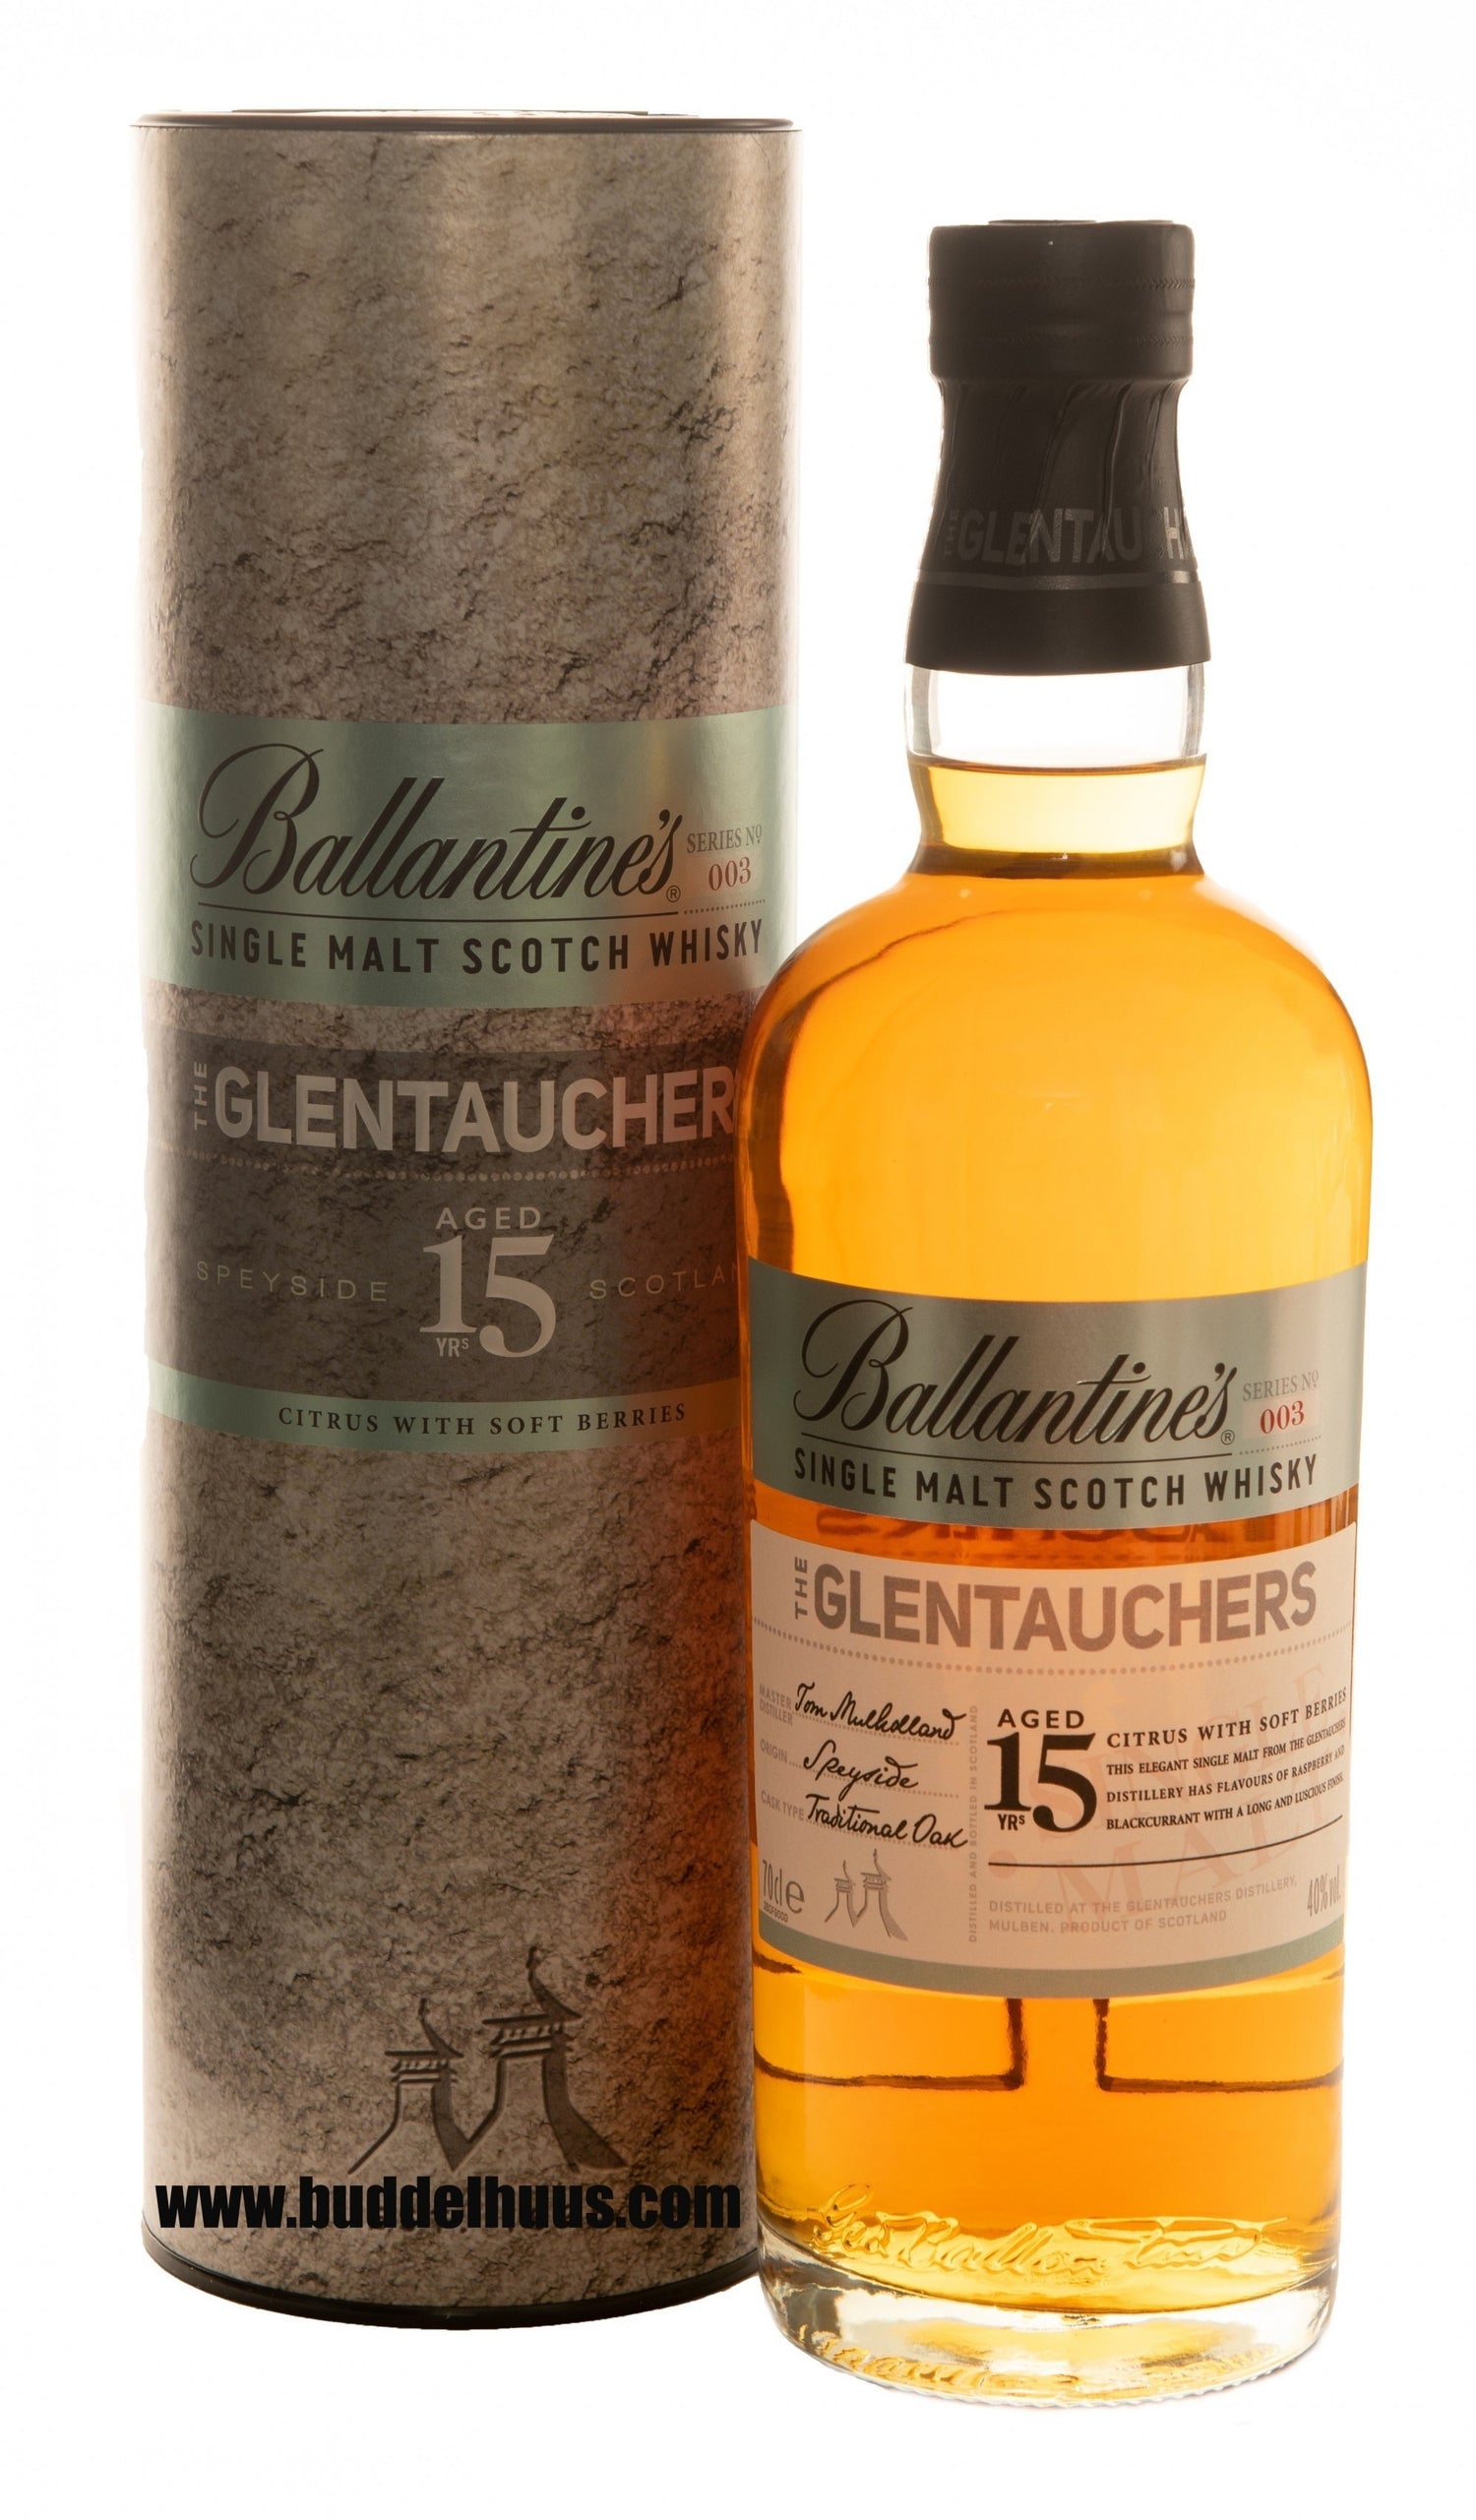 Ballantine's 15 yo Glentauchers